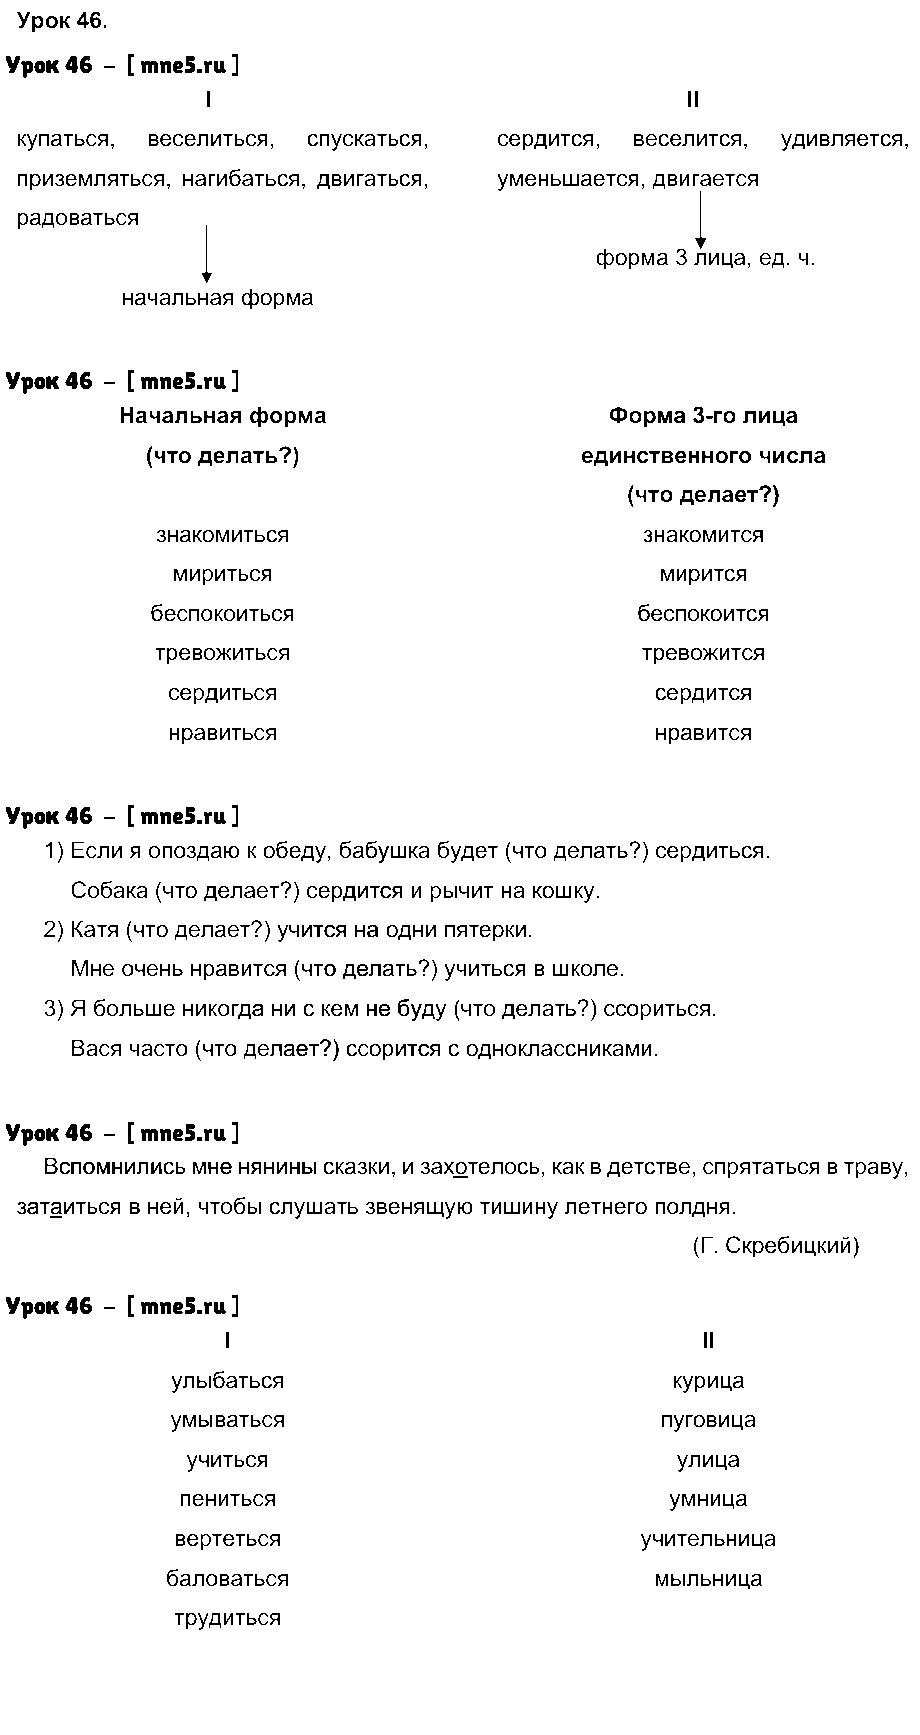 ГДЗ Русский язык 4 класс - Урок 46